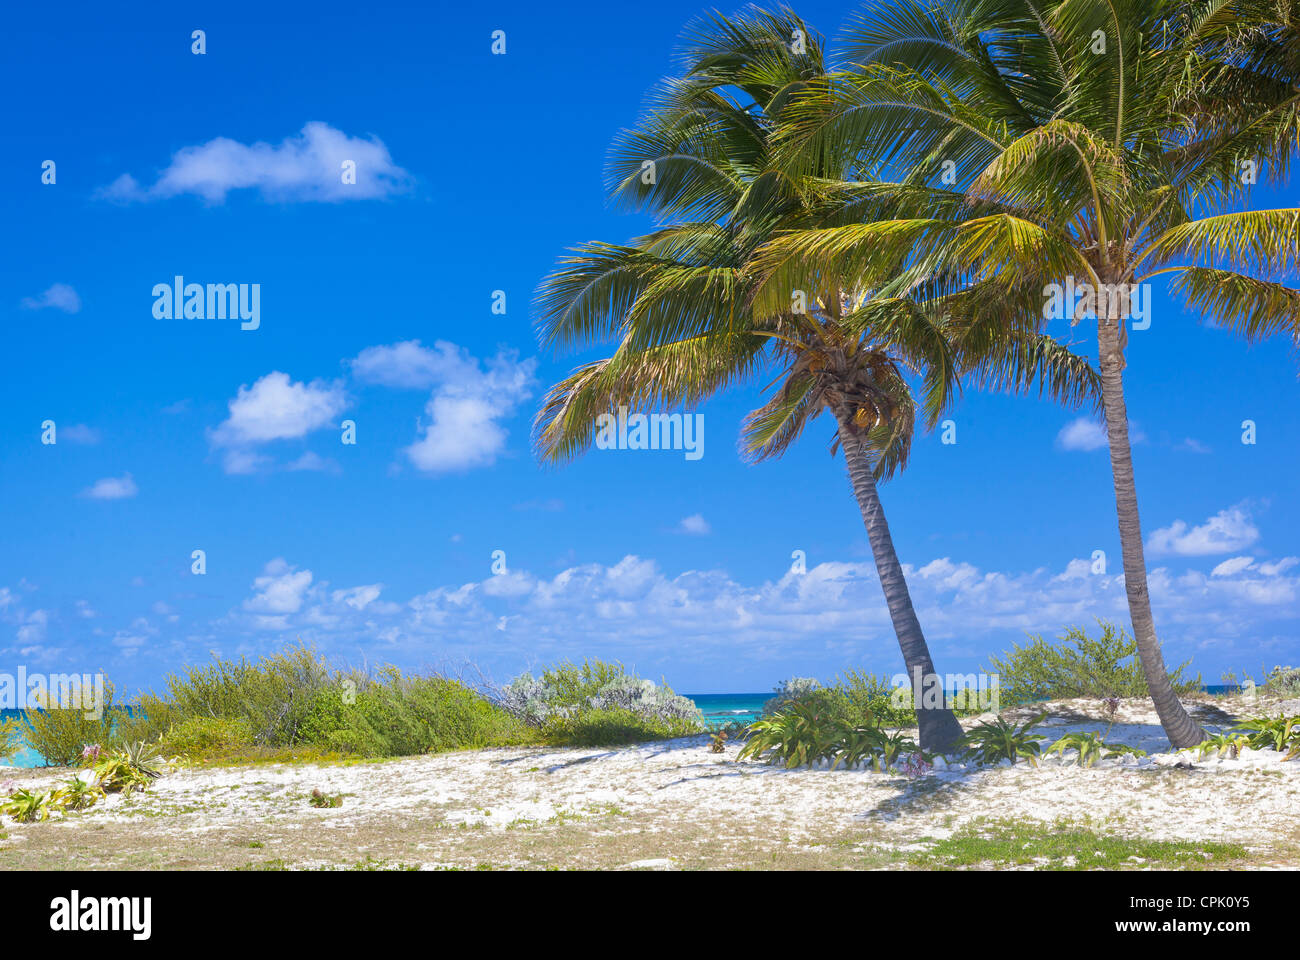 Anegada, Britische Jungferninseln, Karibik Palmen am Rande eines weißen Sandstrandes an Kuh Wreck Bay Stockfoto